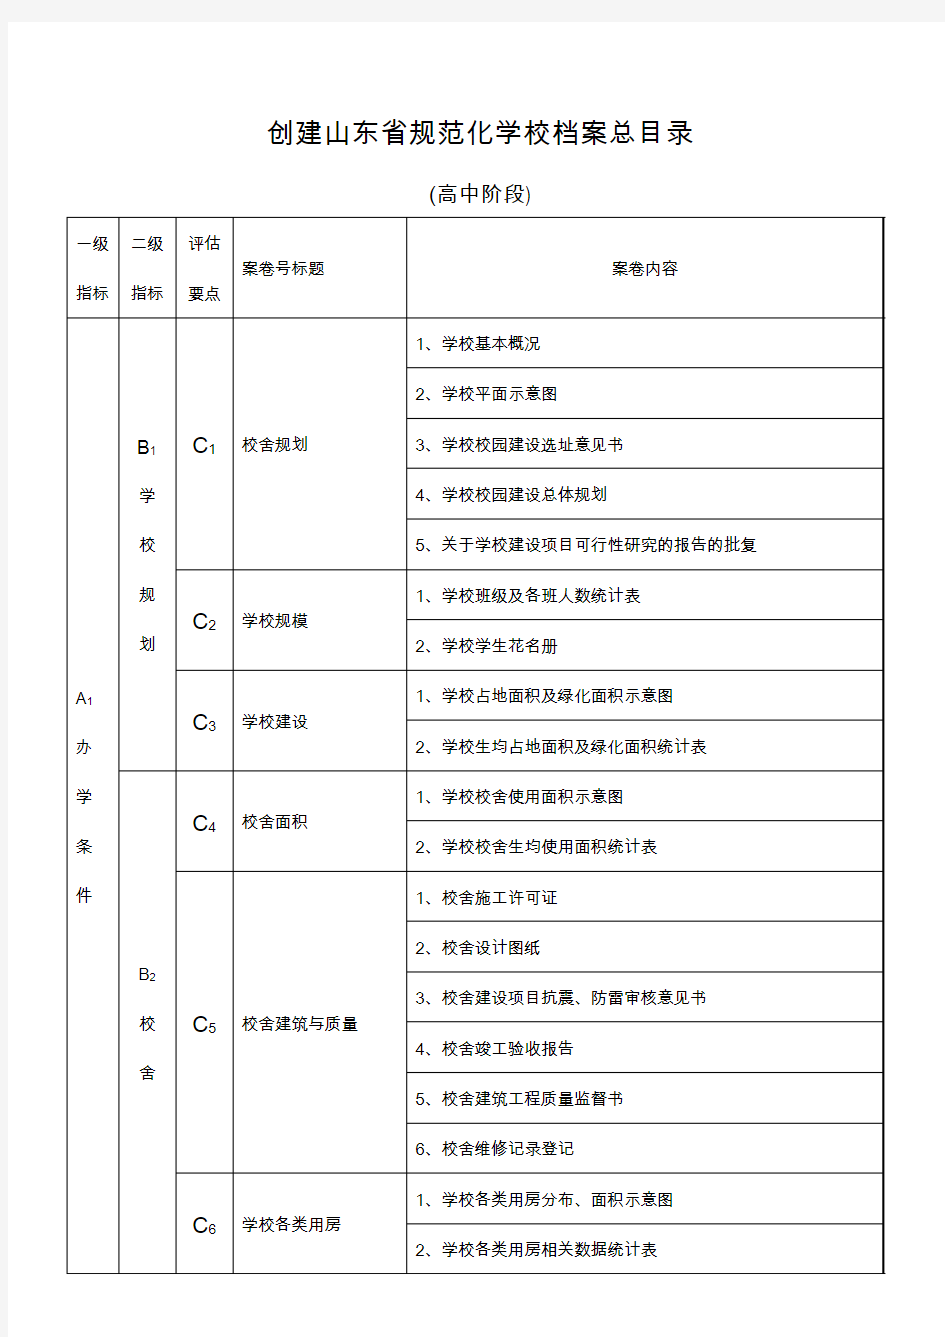 2015年创建山东省规范化学校档案总目录(58项)